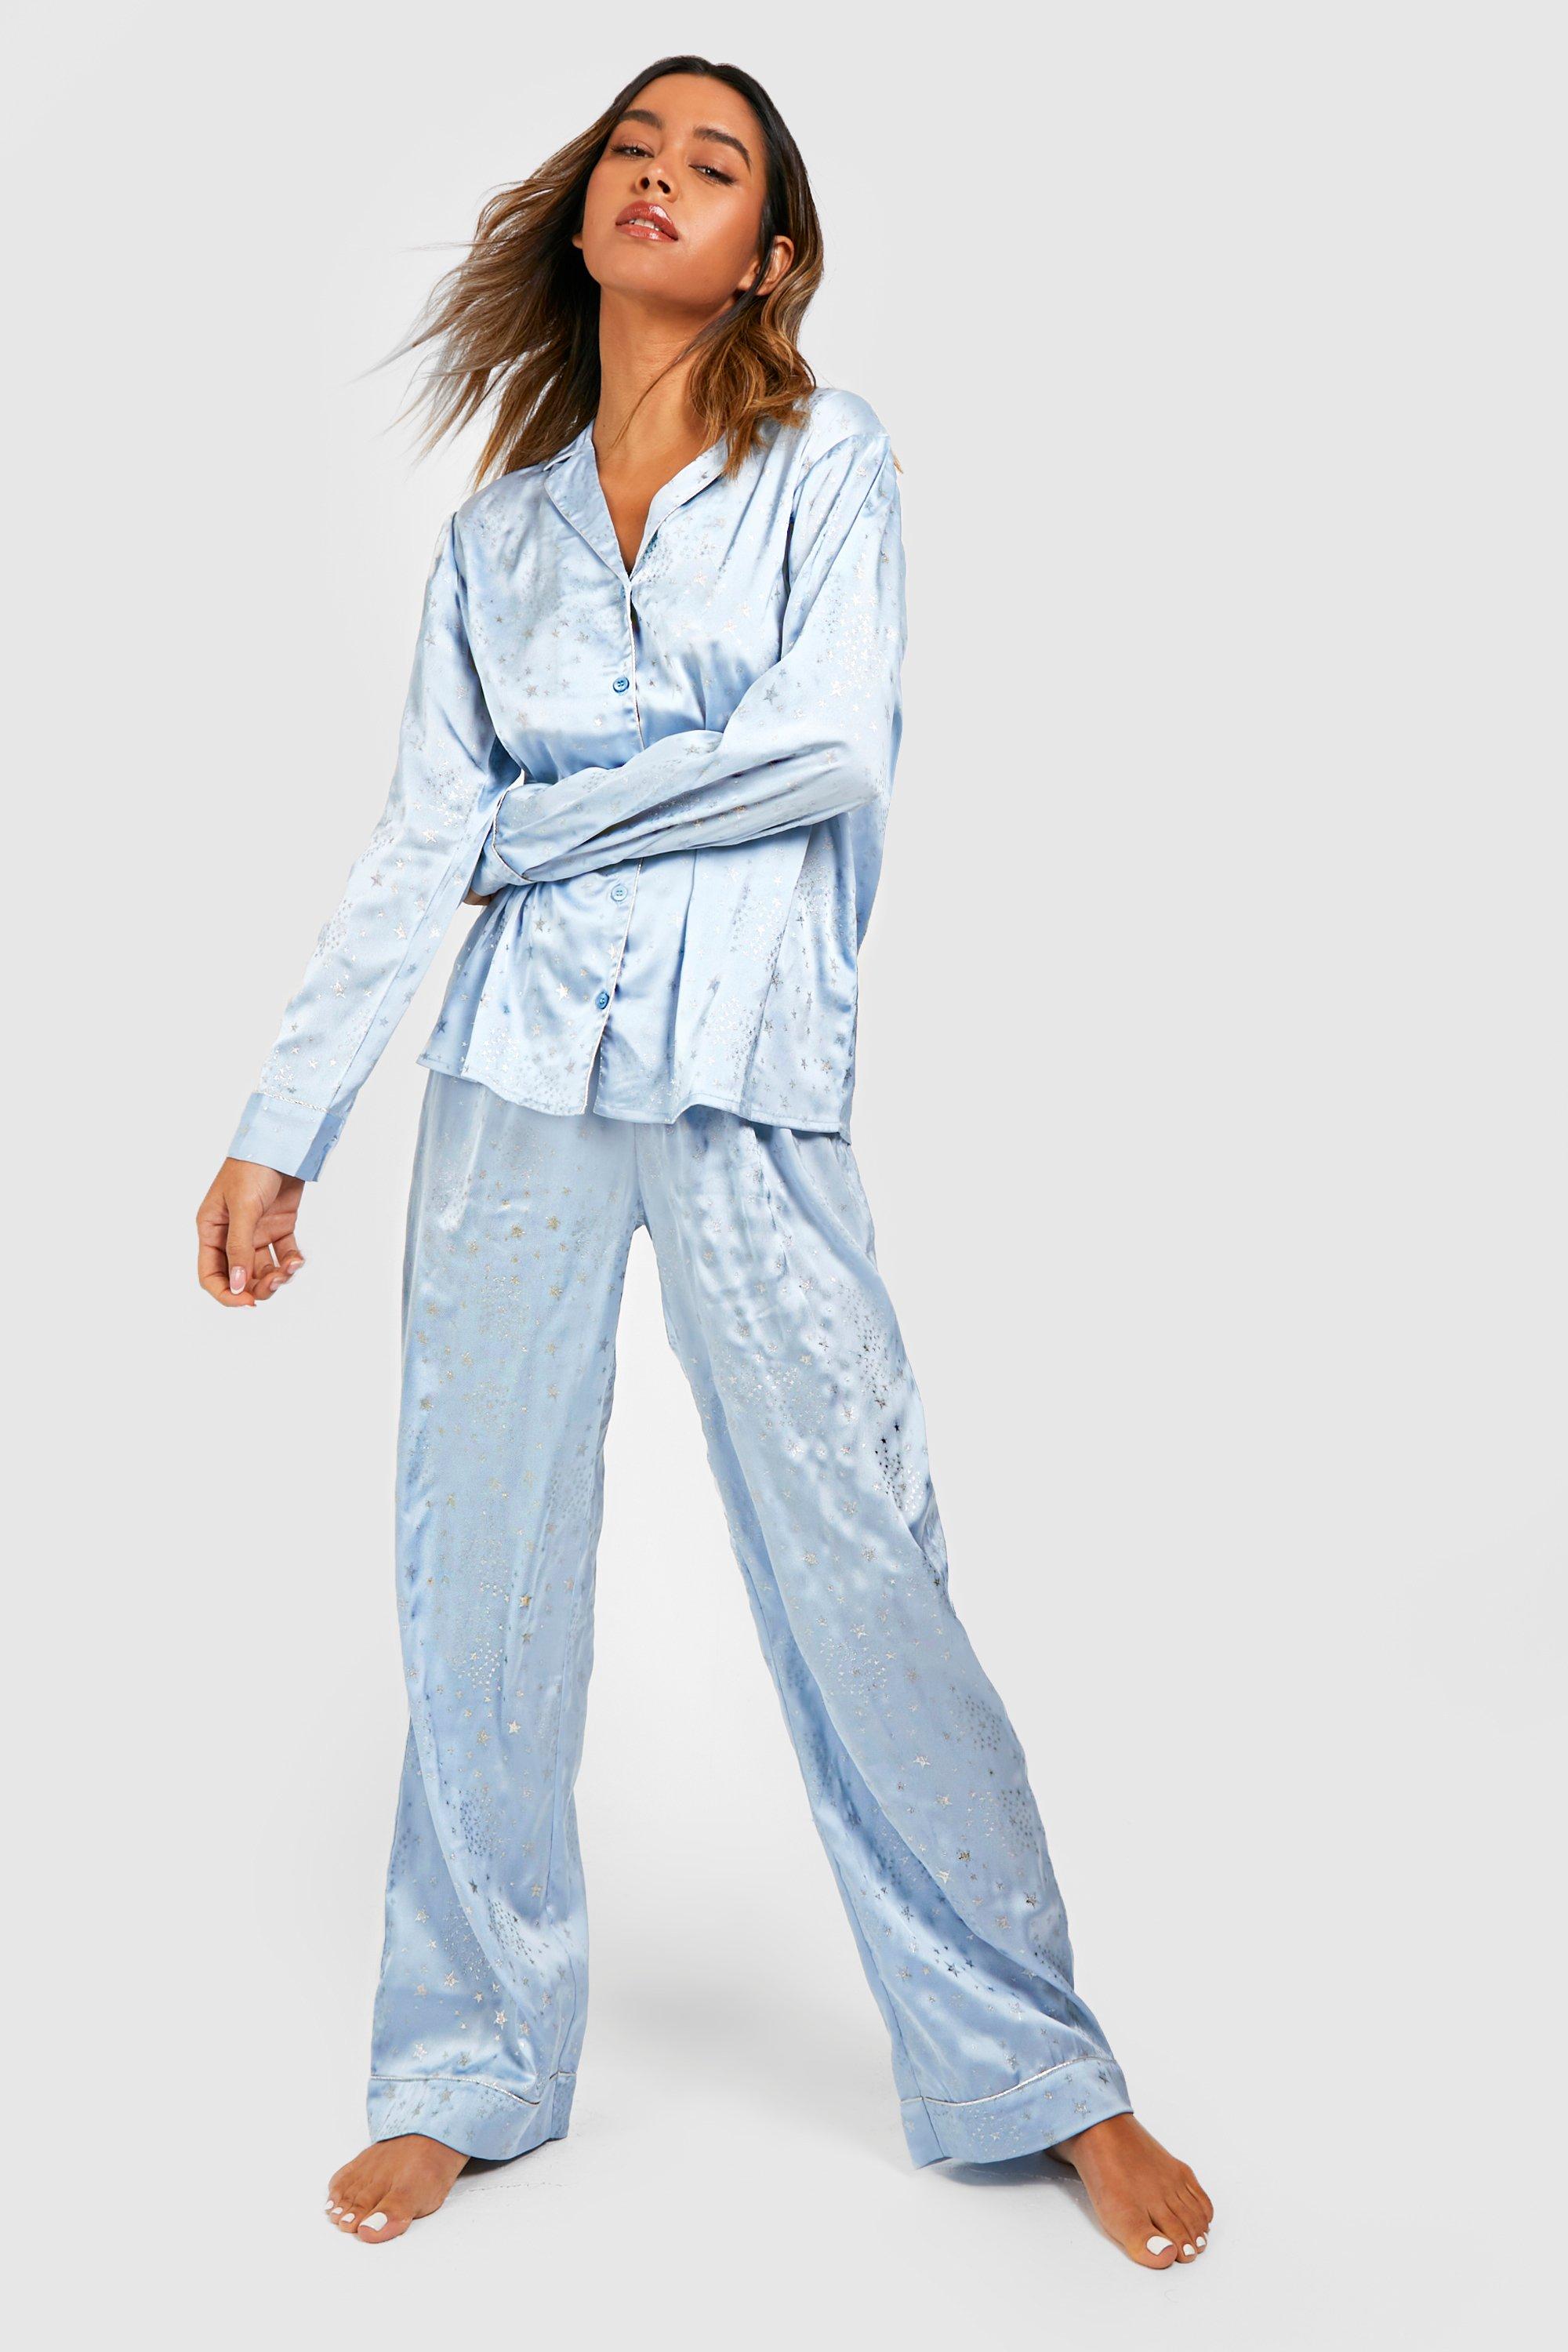 Tall Snuggle Season Pyjama Set